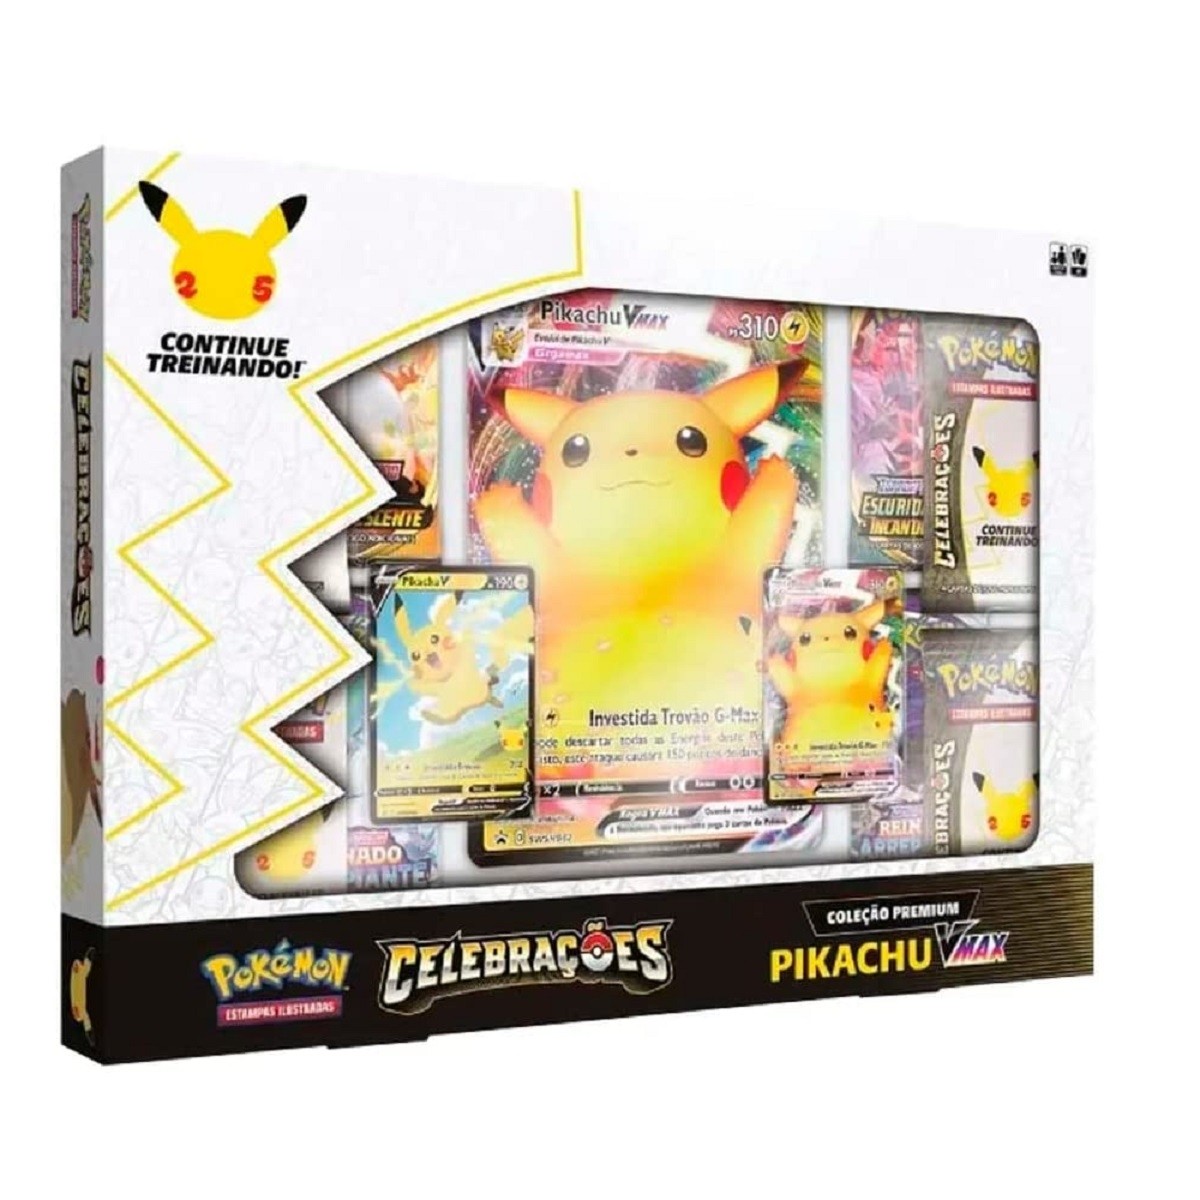 Box Pokémon Coleção Premium Celebrações Pikachu VMAX - Copag